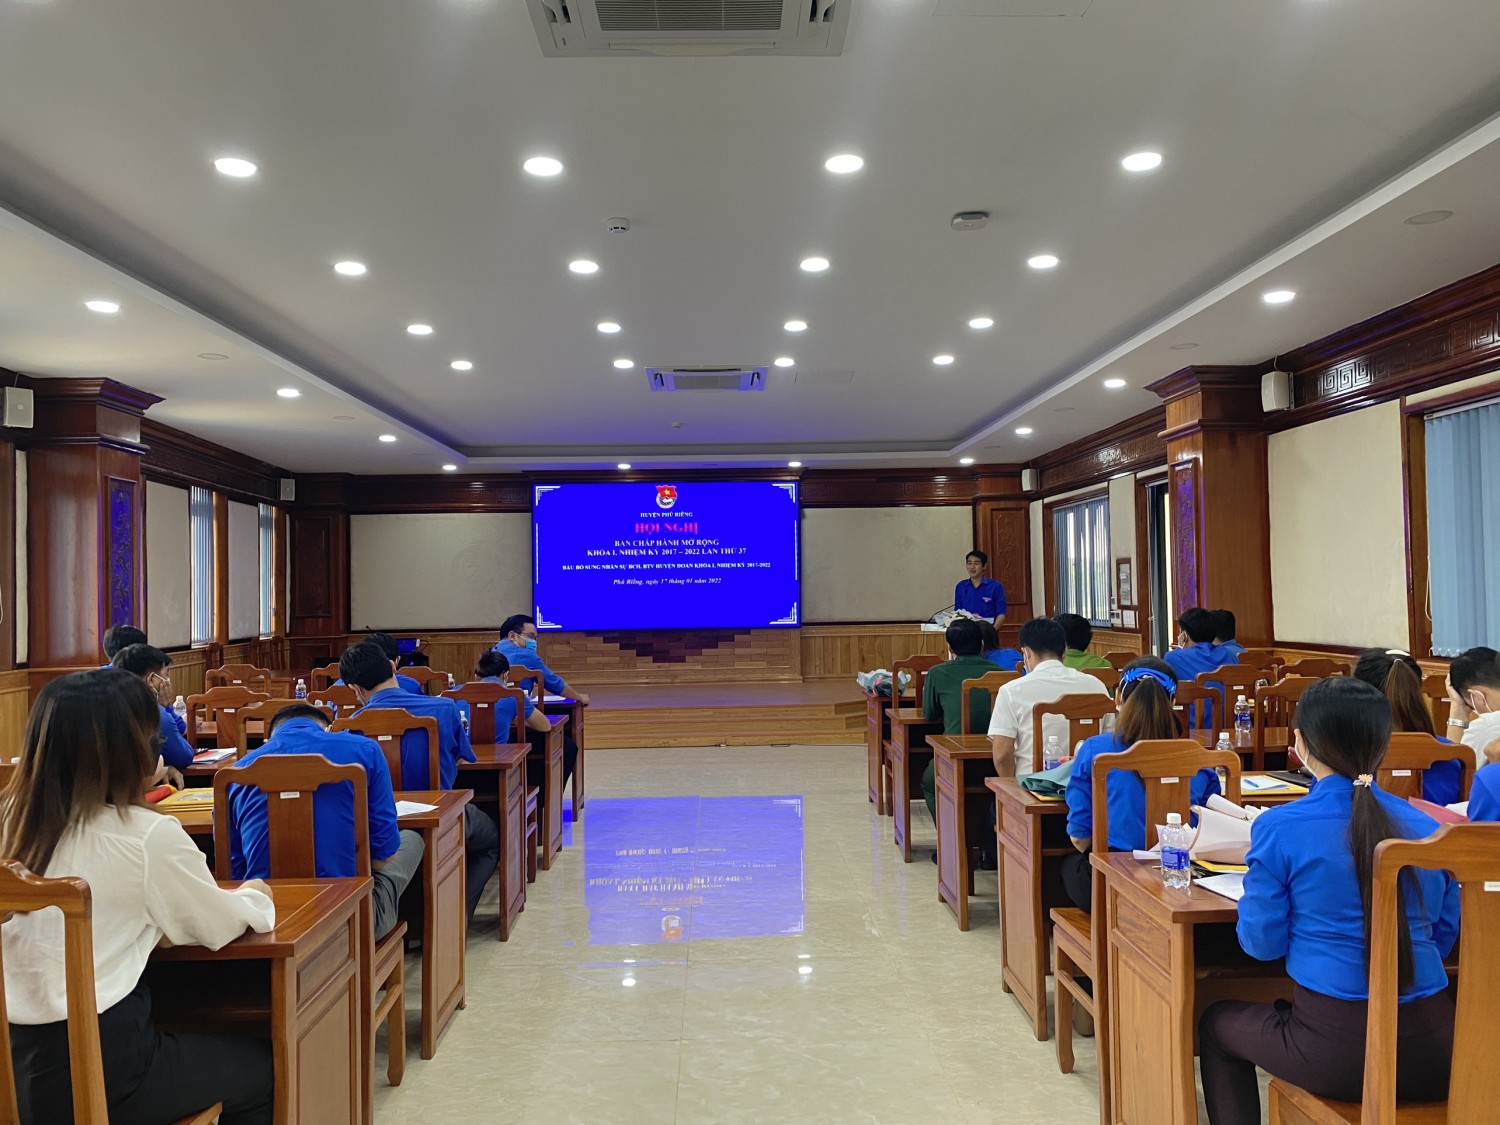 Huyện đoàn Phú Riềng họp Ban Chấp hành mở rộng khóa I, nhiệm kỳ 2017-2022